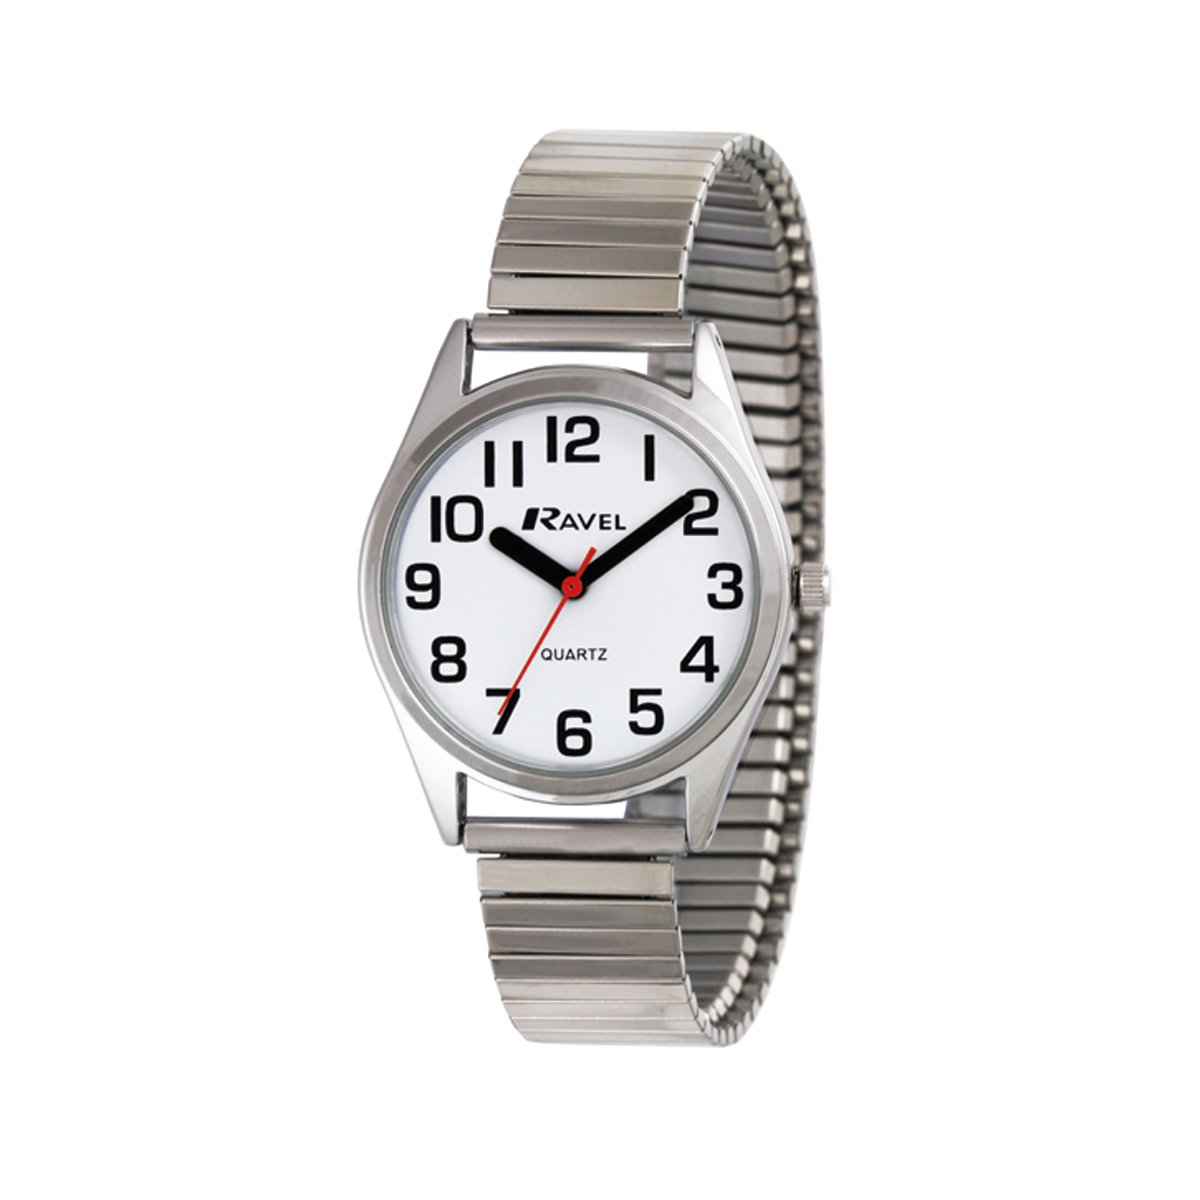 Ravel - dames super gewaagd zicht hulp roestvrij staal expander armband horloge met grote getallen en handen (27mm horlogekast) - Analoge Kwarts - R0225.01.2 - zilverkleurig / witte wijzerplaat